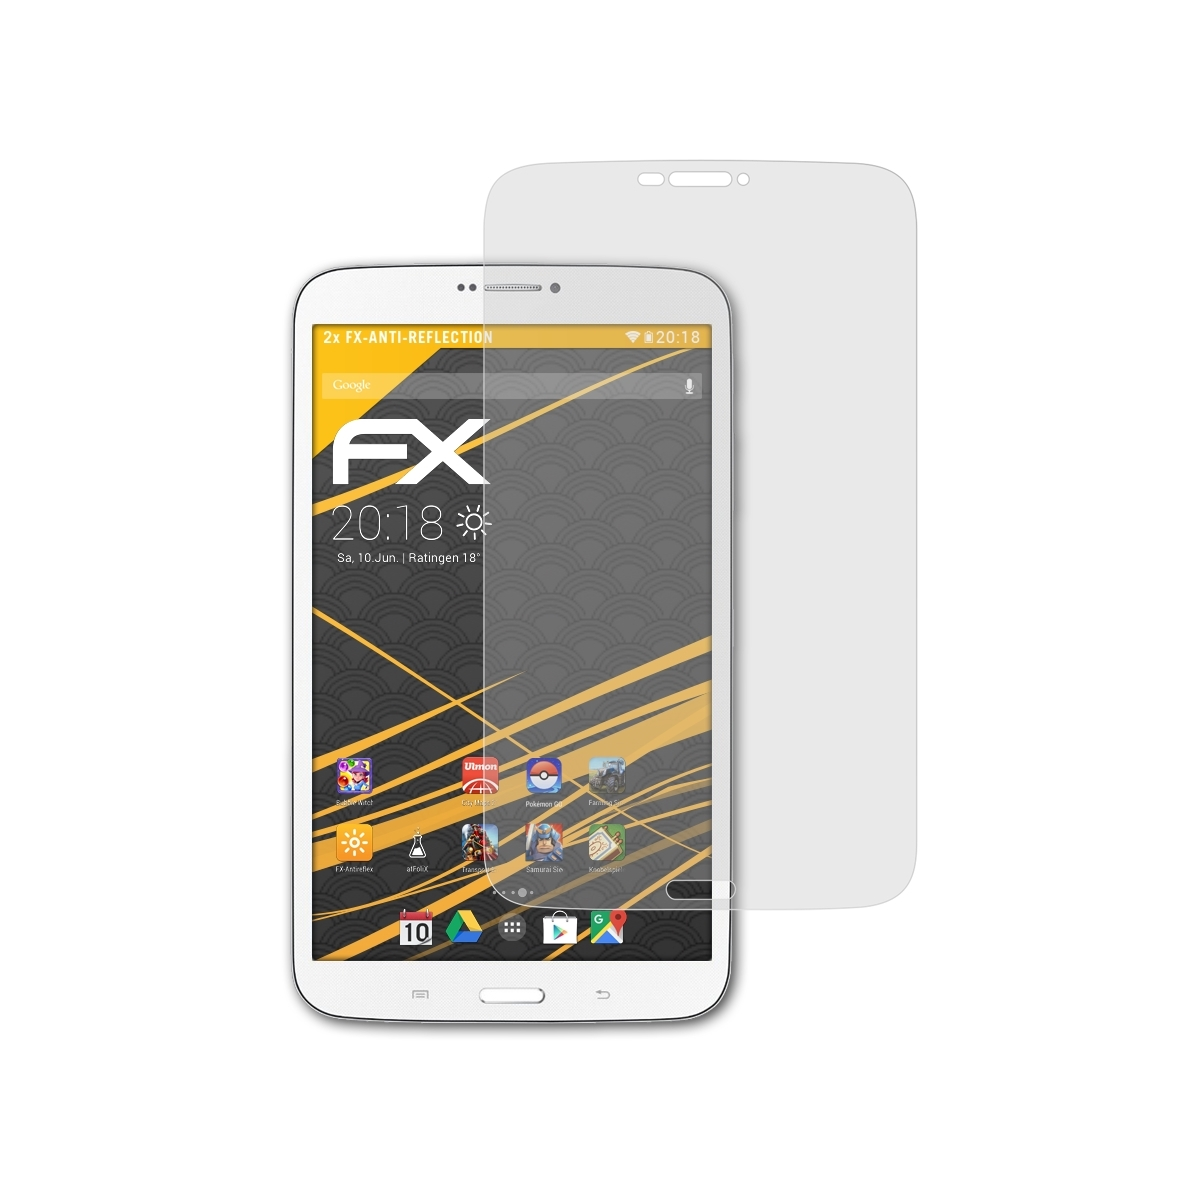 SM-T3110 Galaxy Tab ATFOLIX Displayschutz(für FX-Antireflex Samsung 3 2x & SM-T3150)) 8.0 LTE (3G